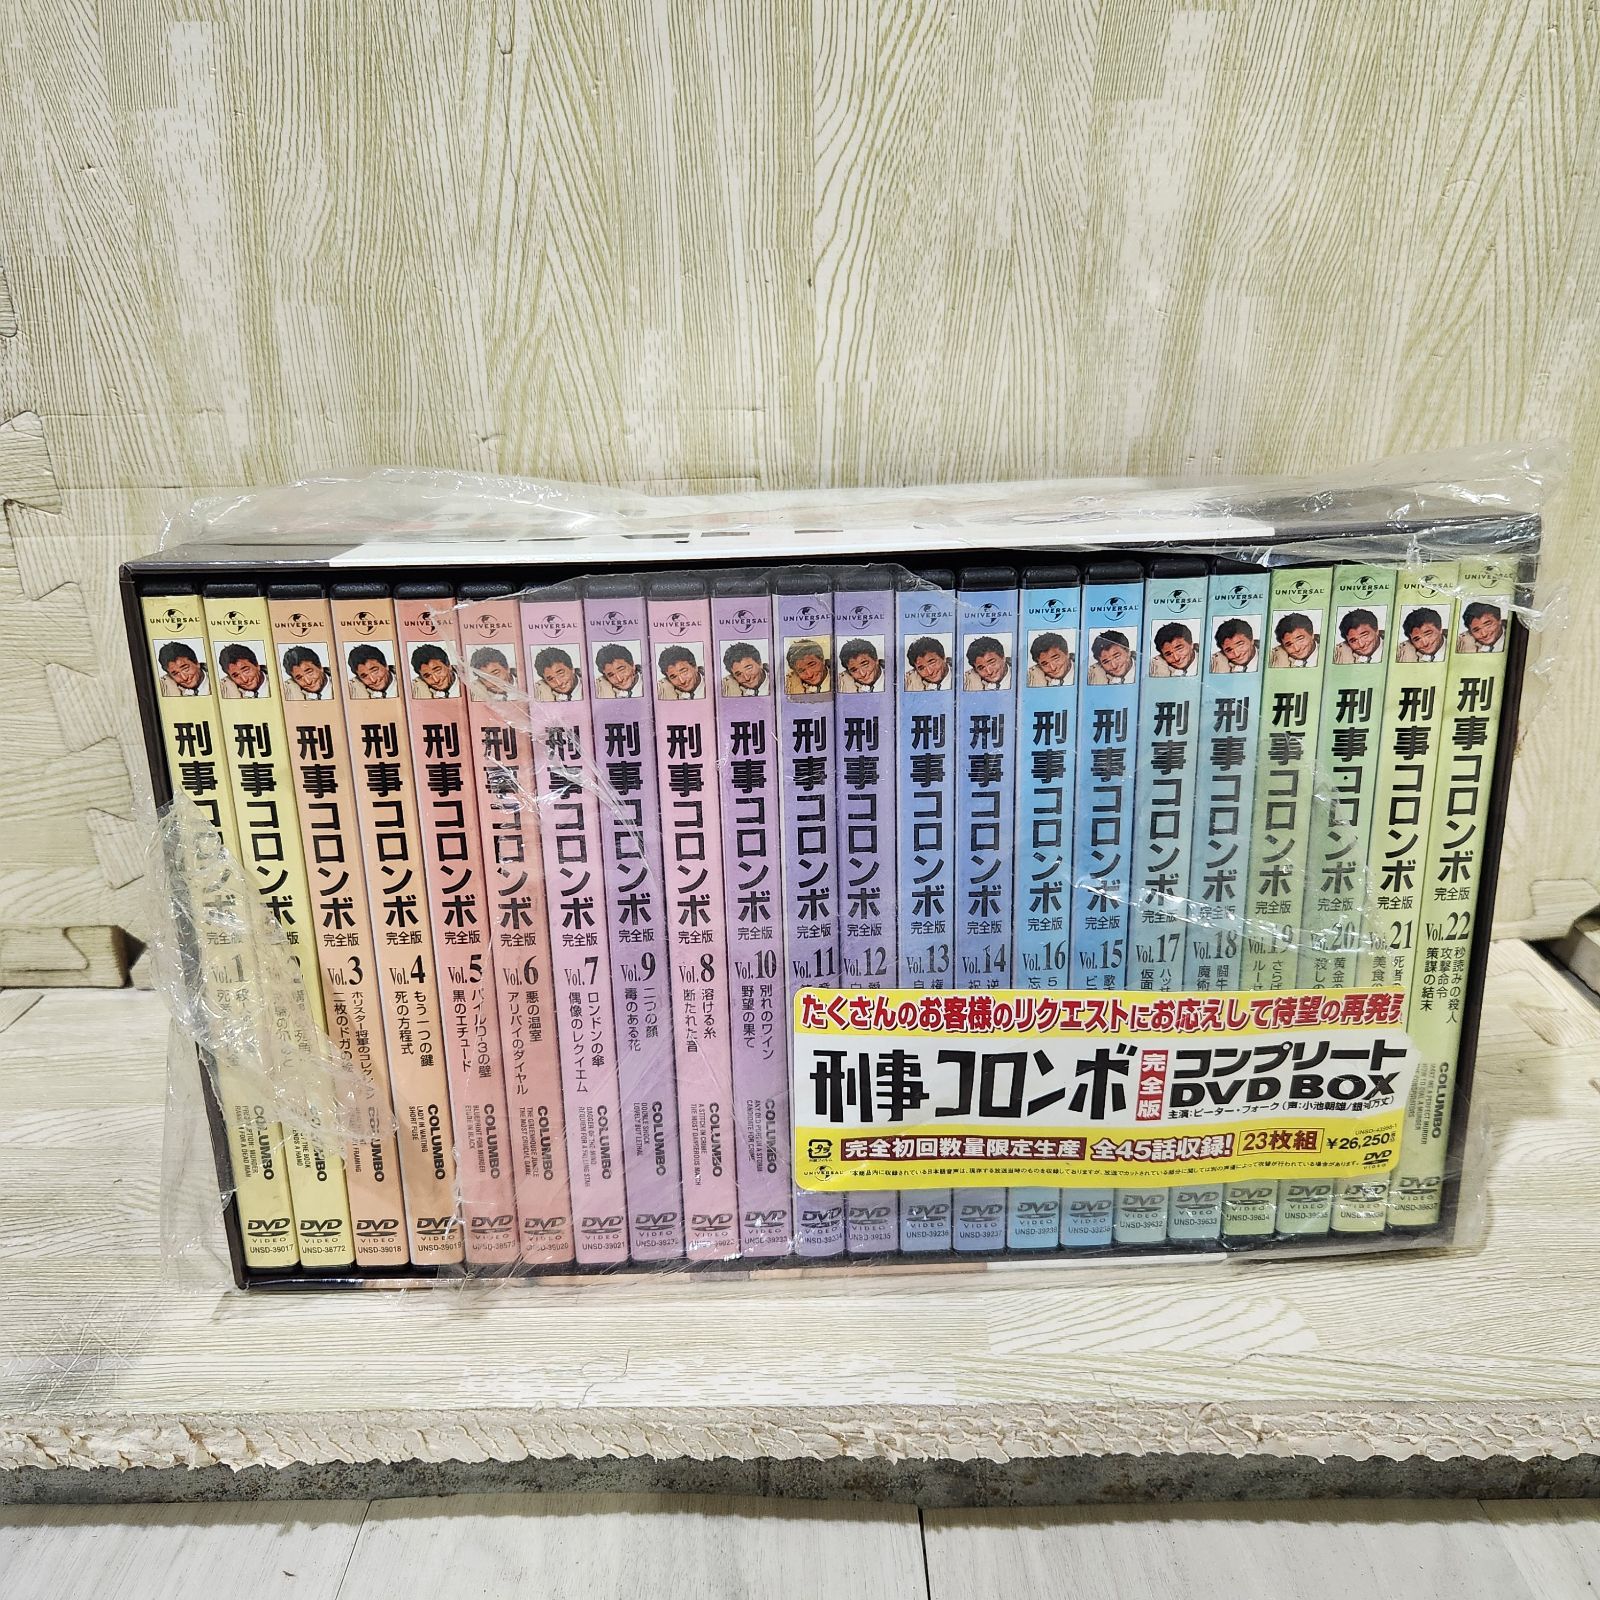 【新品未開封】刑事コロンボ完全版 コンプリート DVD-BOX〈23枚組〉